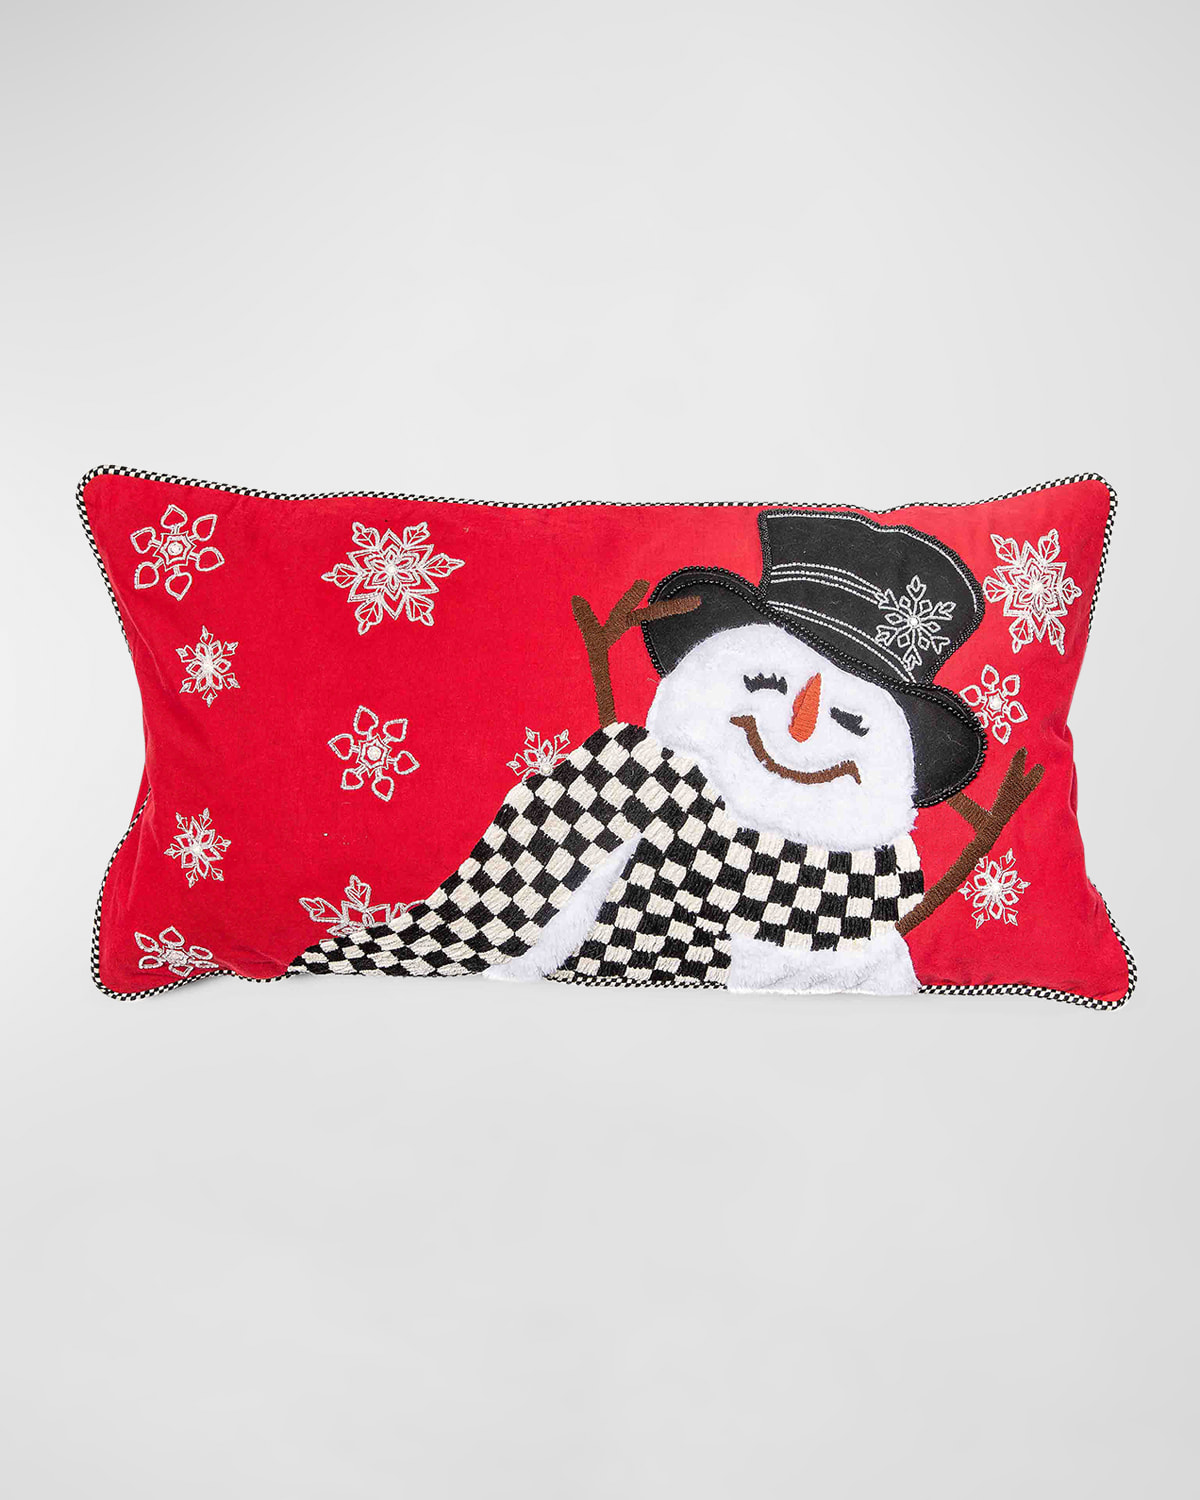 Mackenzie-childs Top Hat Snowman Lumbar Pillow, 12" X 30"